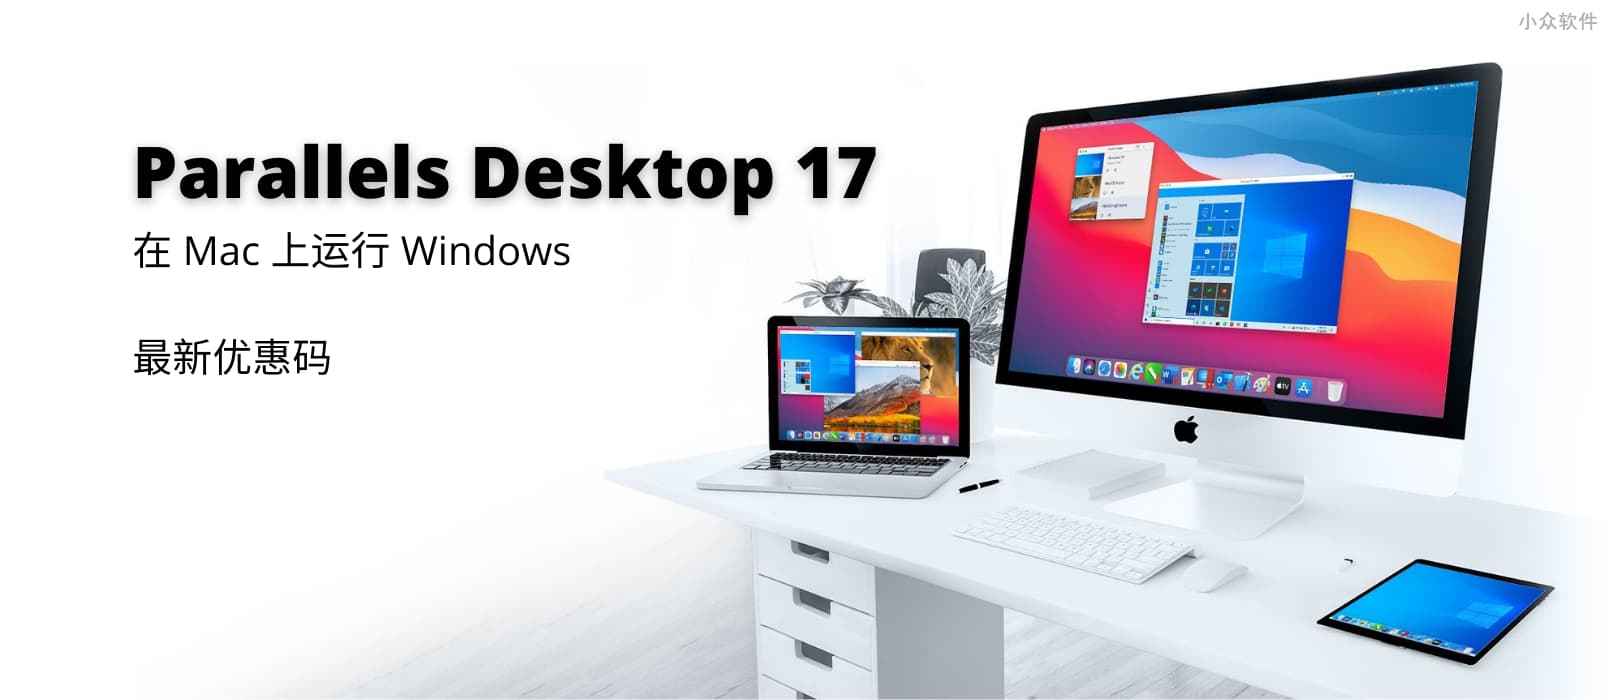 Parallels Desktop 17 最新优惠码：在 Mac 上运行 Windows 的虚拟机软件 1